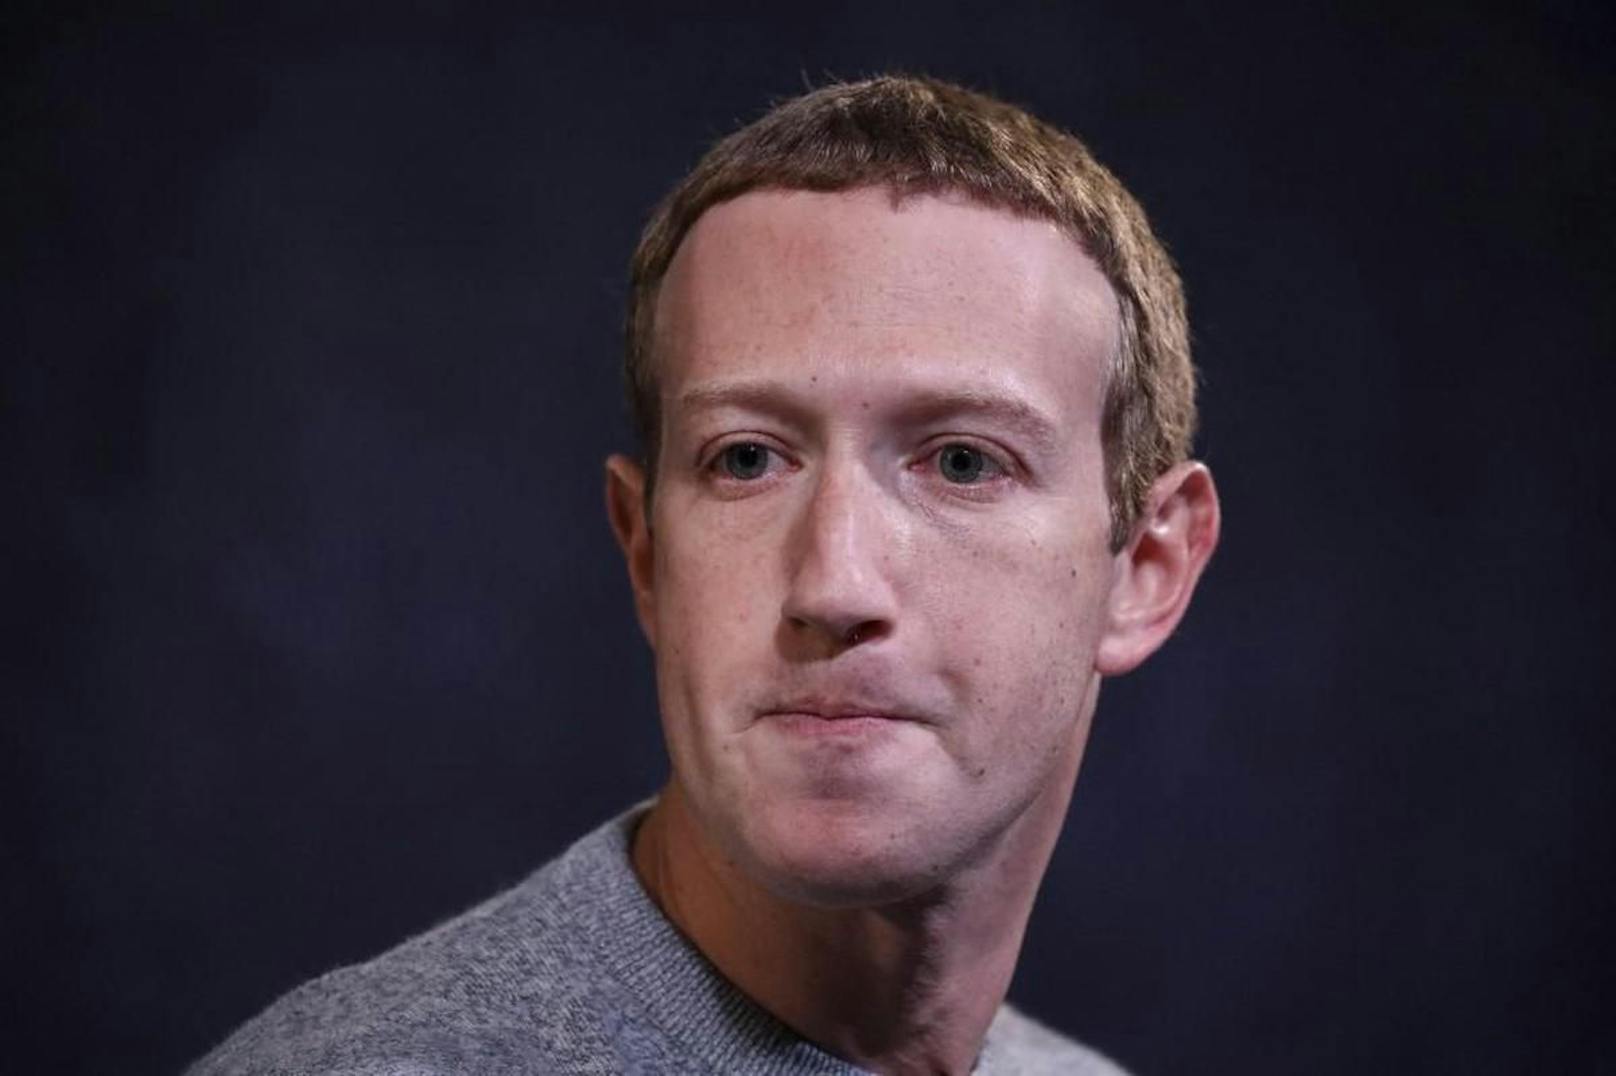 Das Projekt "Metaverse" wird von Facebook-CEO Mark Zuckerberg als zentral für die Zukunft des Konzerns angesehen.